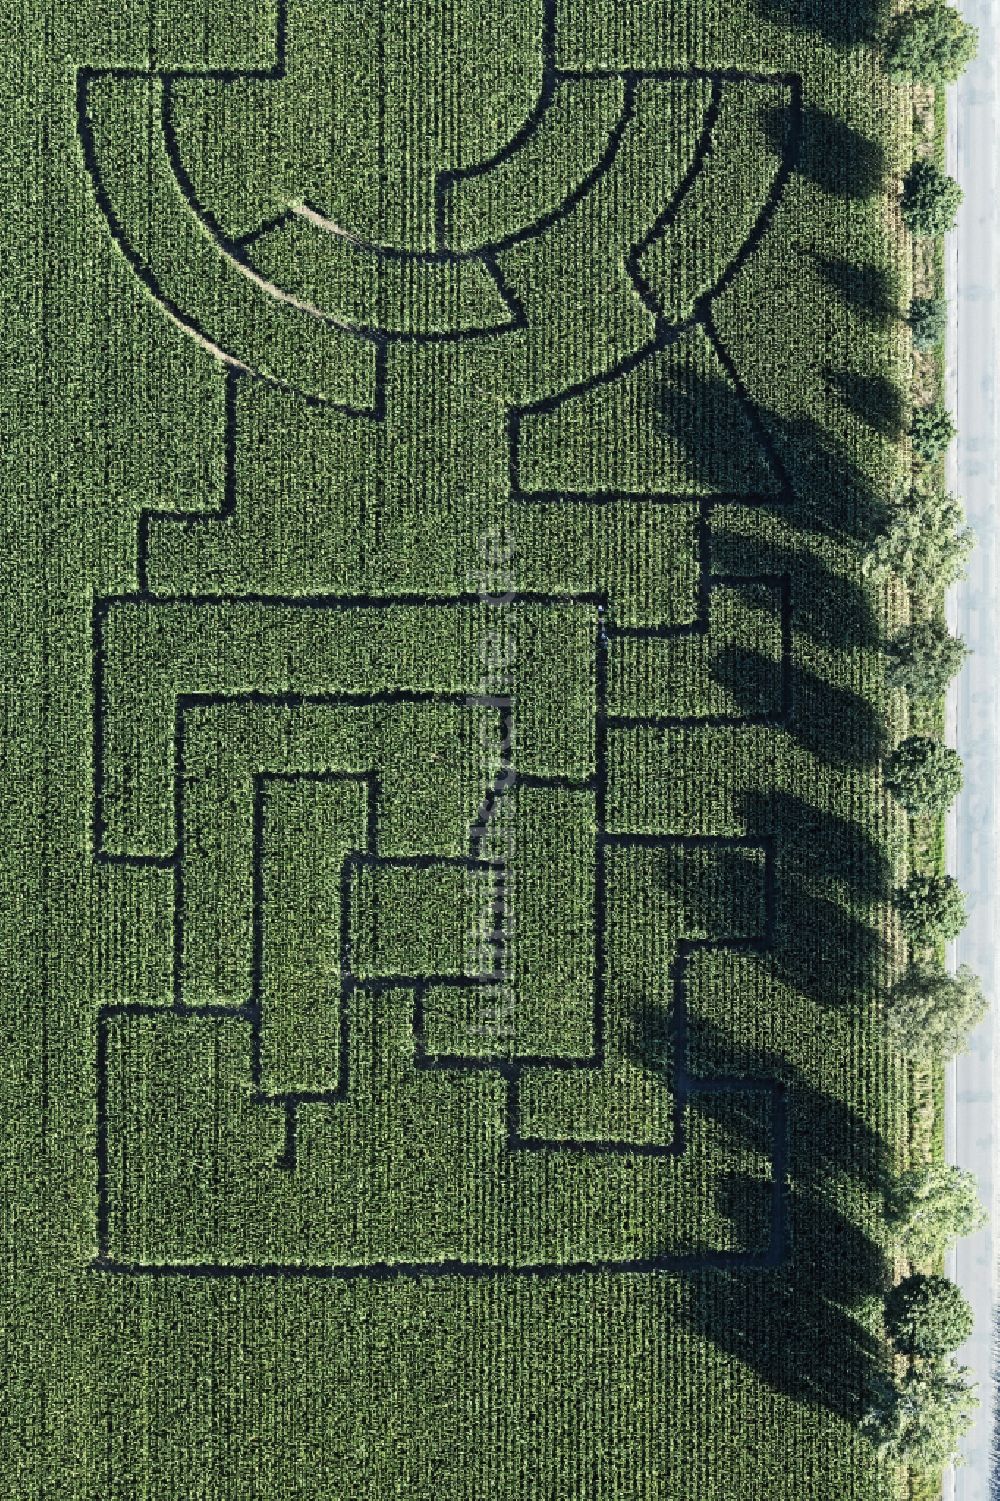 Uchte aus der Vogelperspektive: Irrgarten - Labyrinth mit den Umrissen auf einem Feld in Uchte im Bundesland Niedersachsen, Deutschland